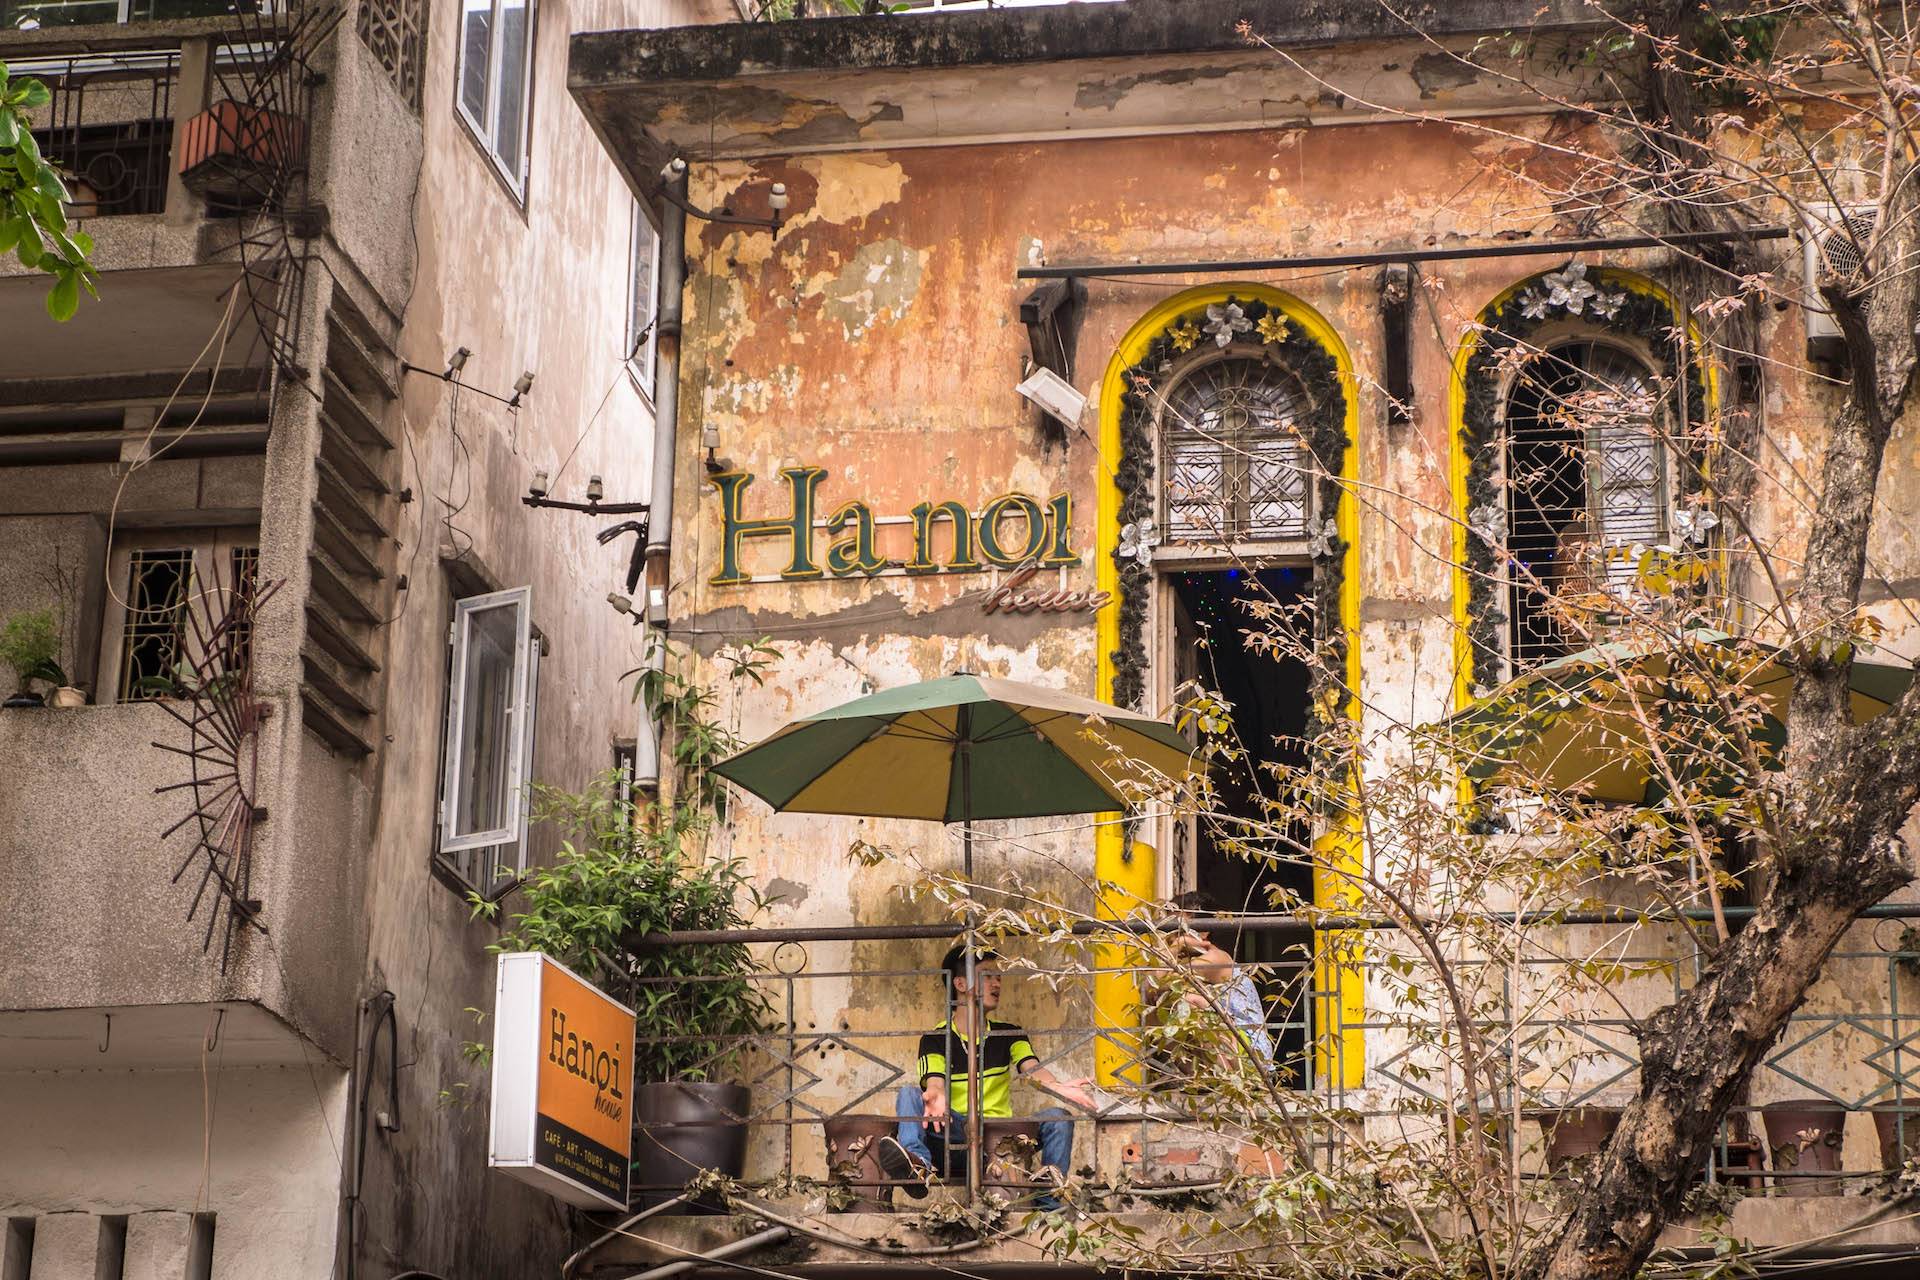 Hanoi House Cafe là nơi lưu giữ trọn vẹn kiến trúc kiểu Pháp xưa nên thu hút được đông đảo giới trẻ ghé thăm và trải nghiệm